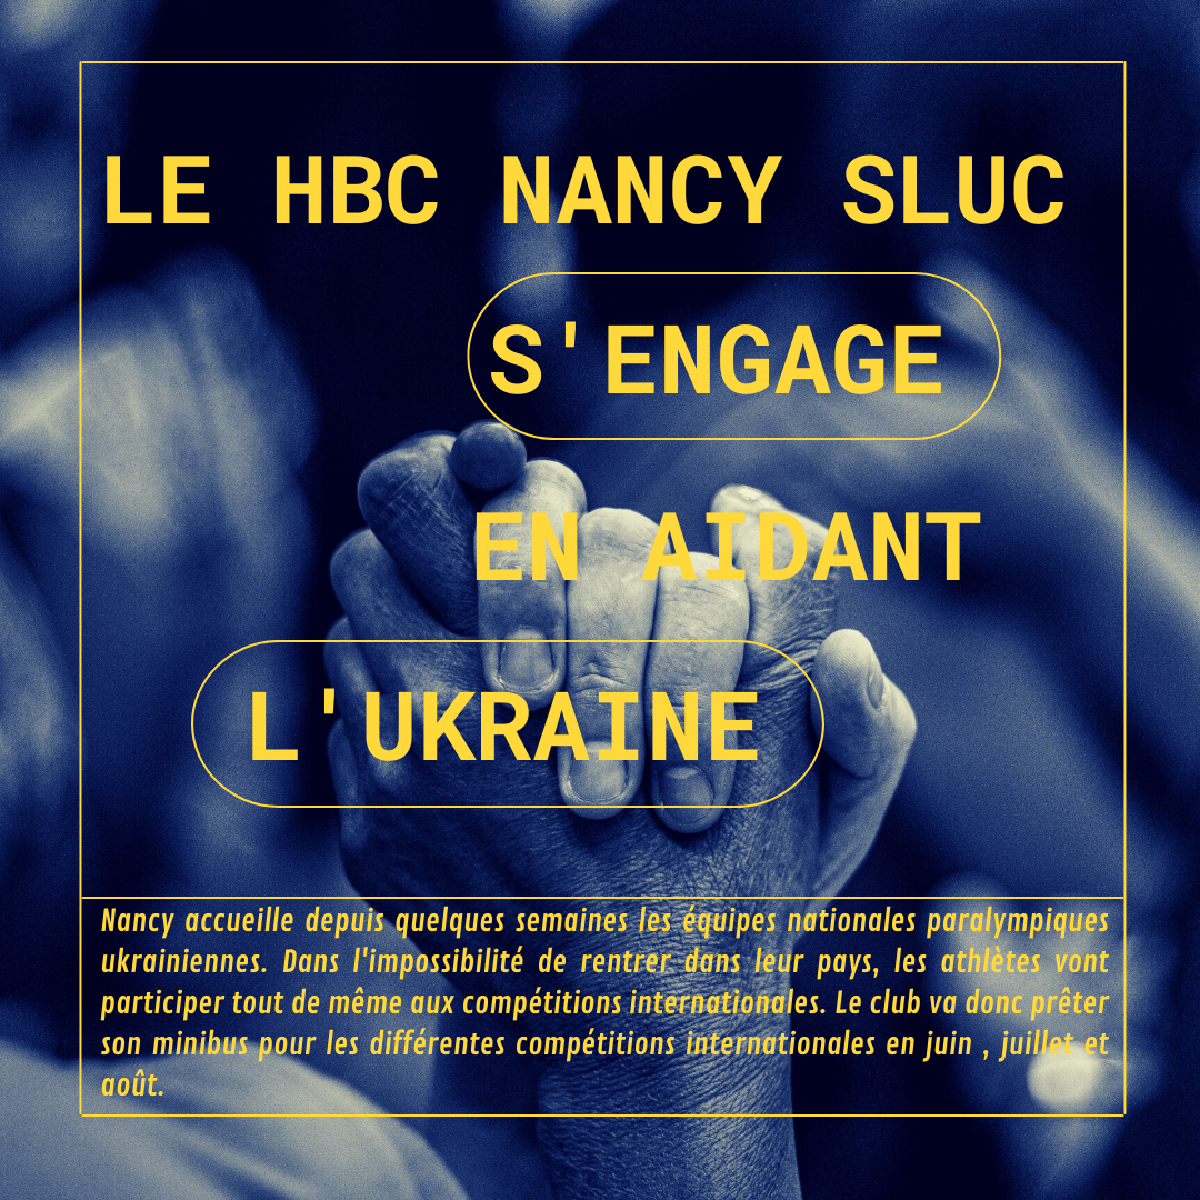 Le HBC Nancy Sluc aide l'Ukraine